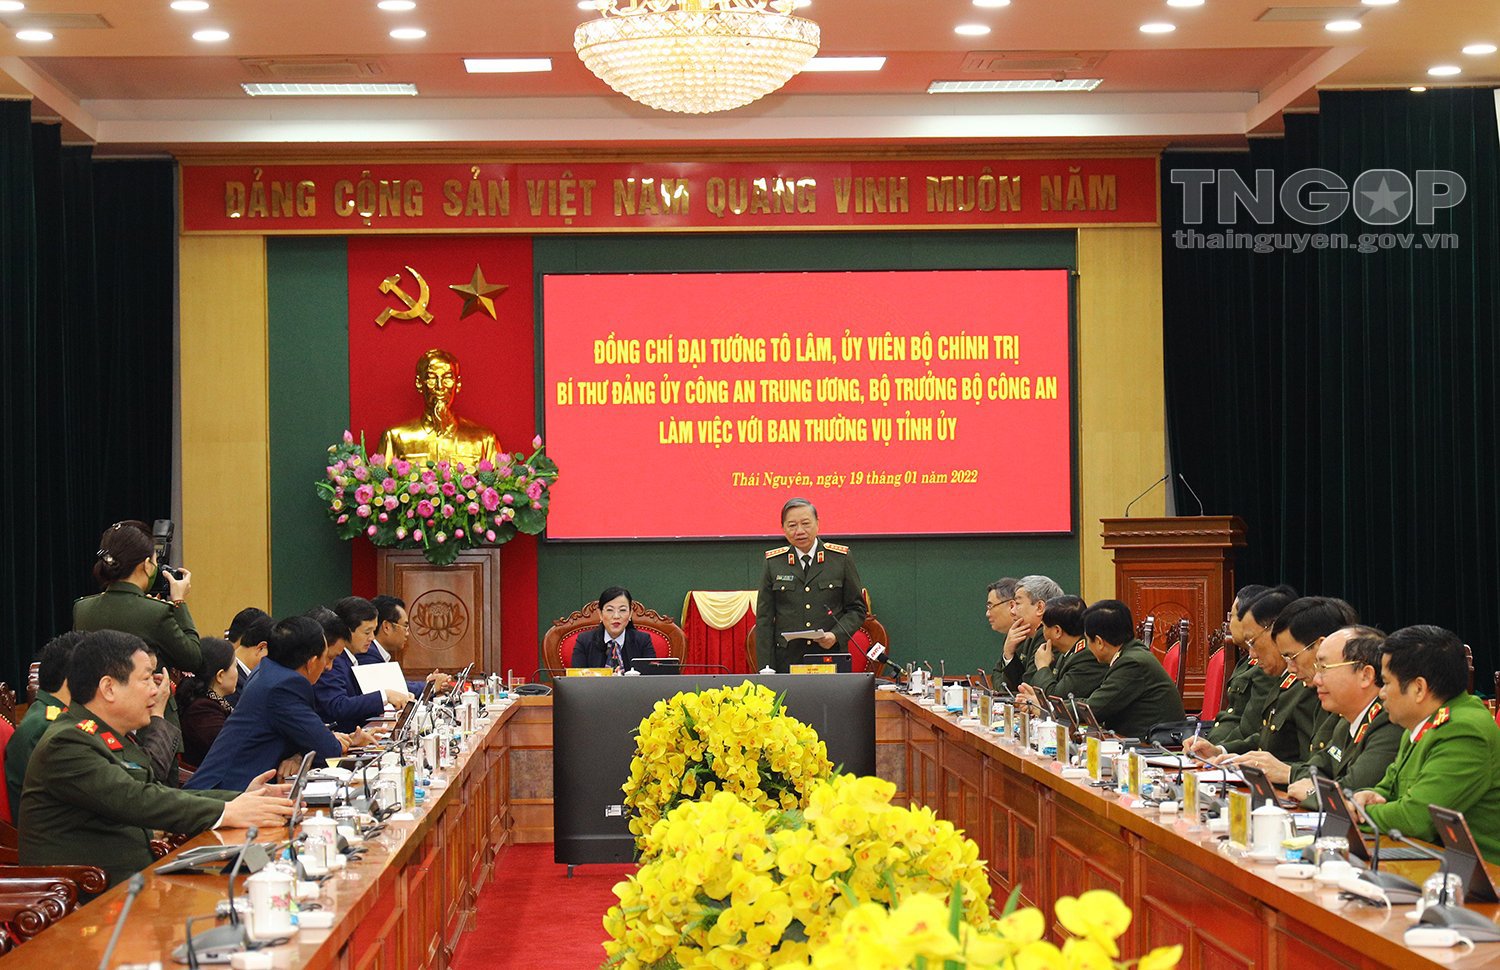 Đại tướng Tô Lâm, Ủy viên bộ chính trị, Bộ trưởng Bộ Công an làm việc với Tỉnh ủy Thái Nguyên ngày 19/01/2022